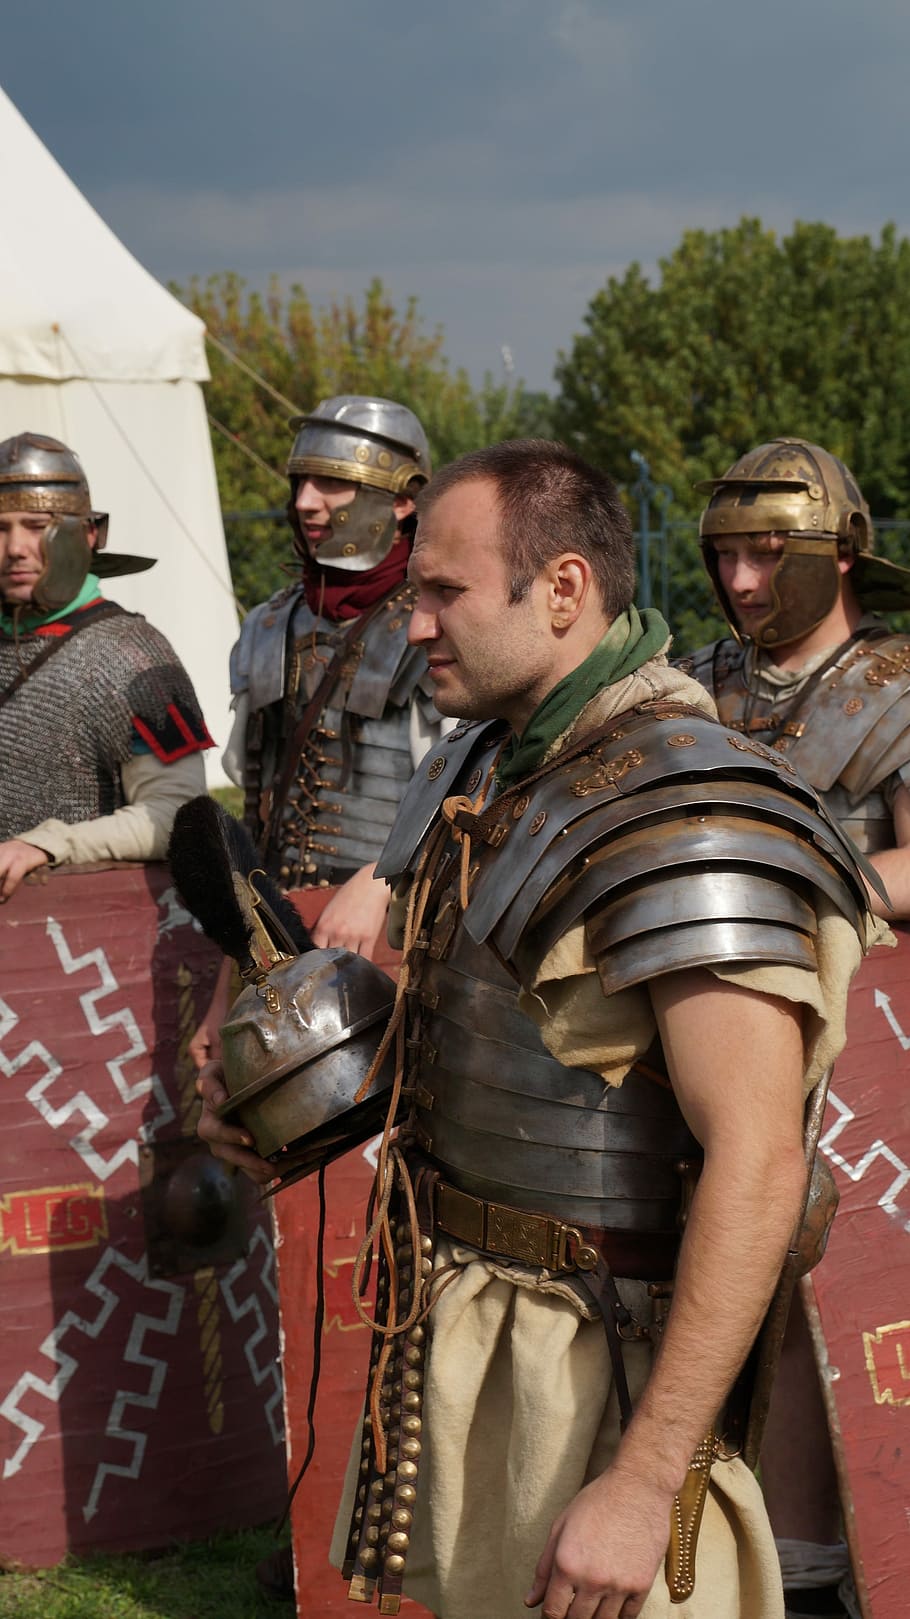 Romanos, Homem, Pessoa, Lutador, legionários romanos, reconstrução histórica, eventos históricos, capacete, em pé, união